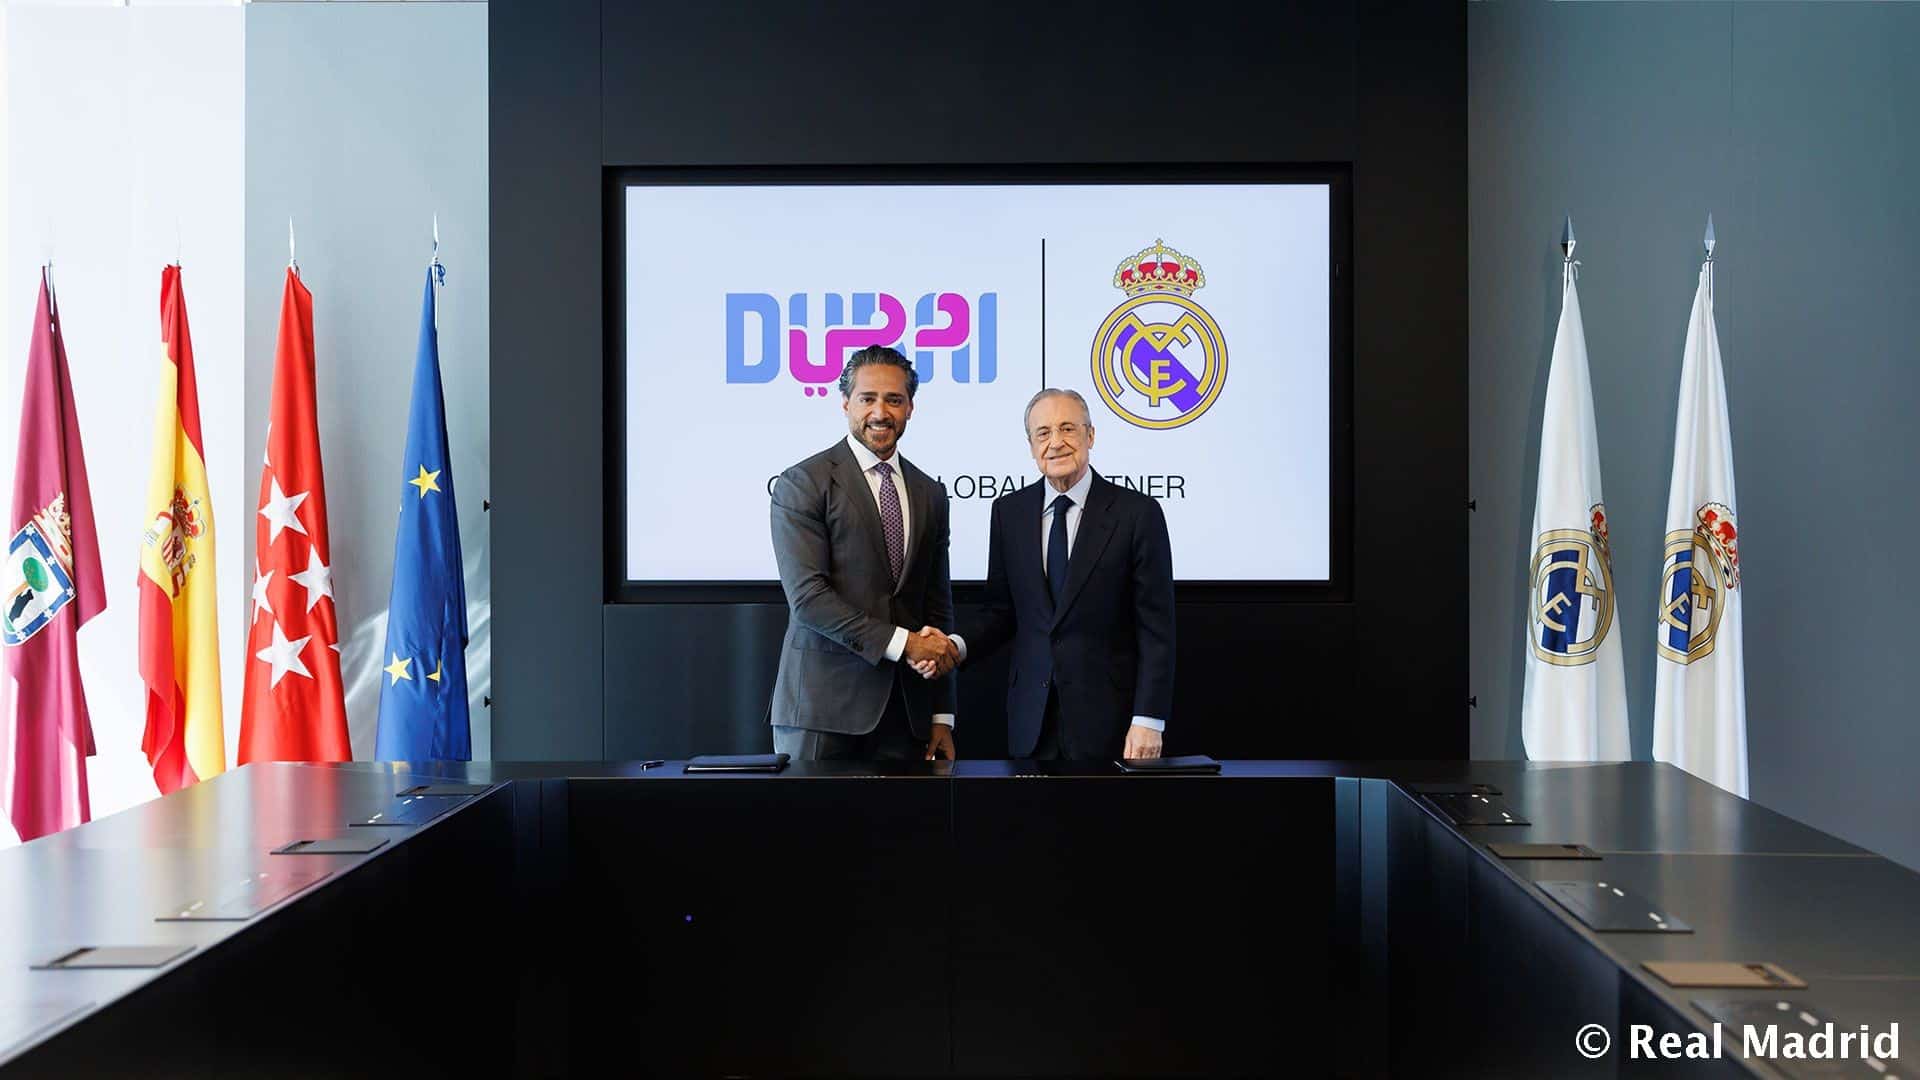 Acuerdo entre el Real Madrid y Visit Dubai